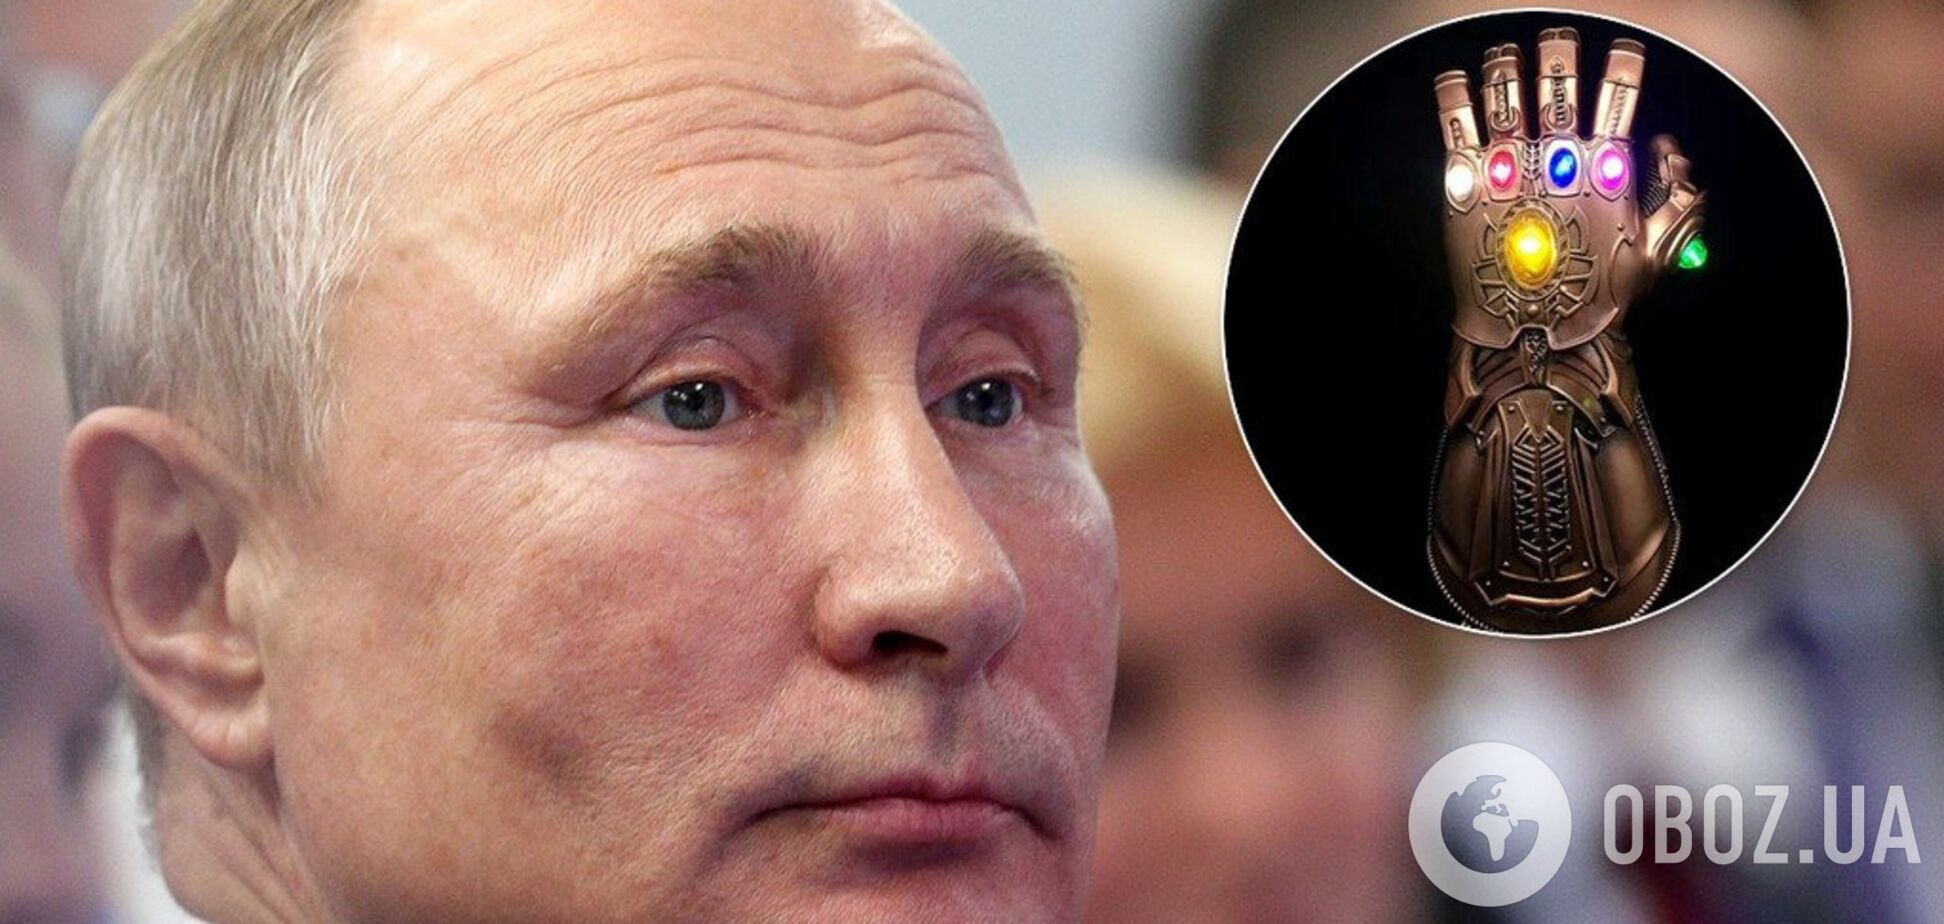 'Красуня': Путін отримав незвичайний боксерський подарунок